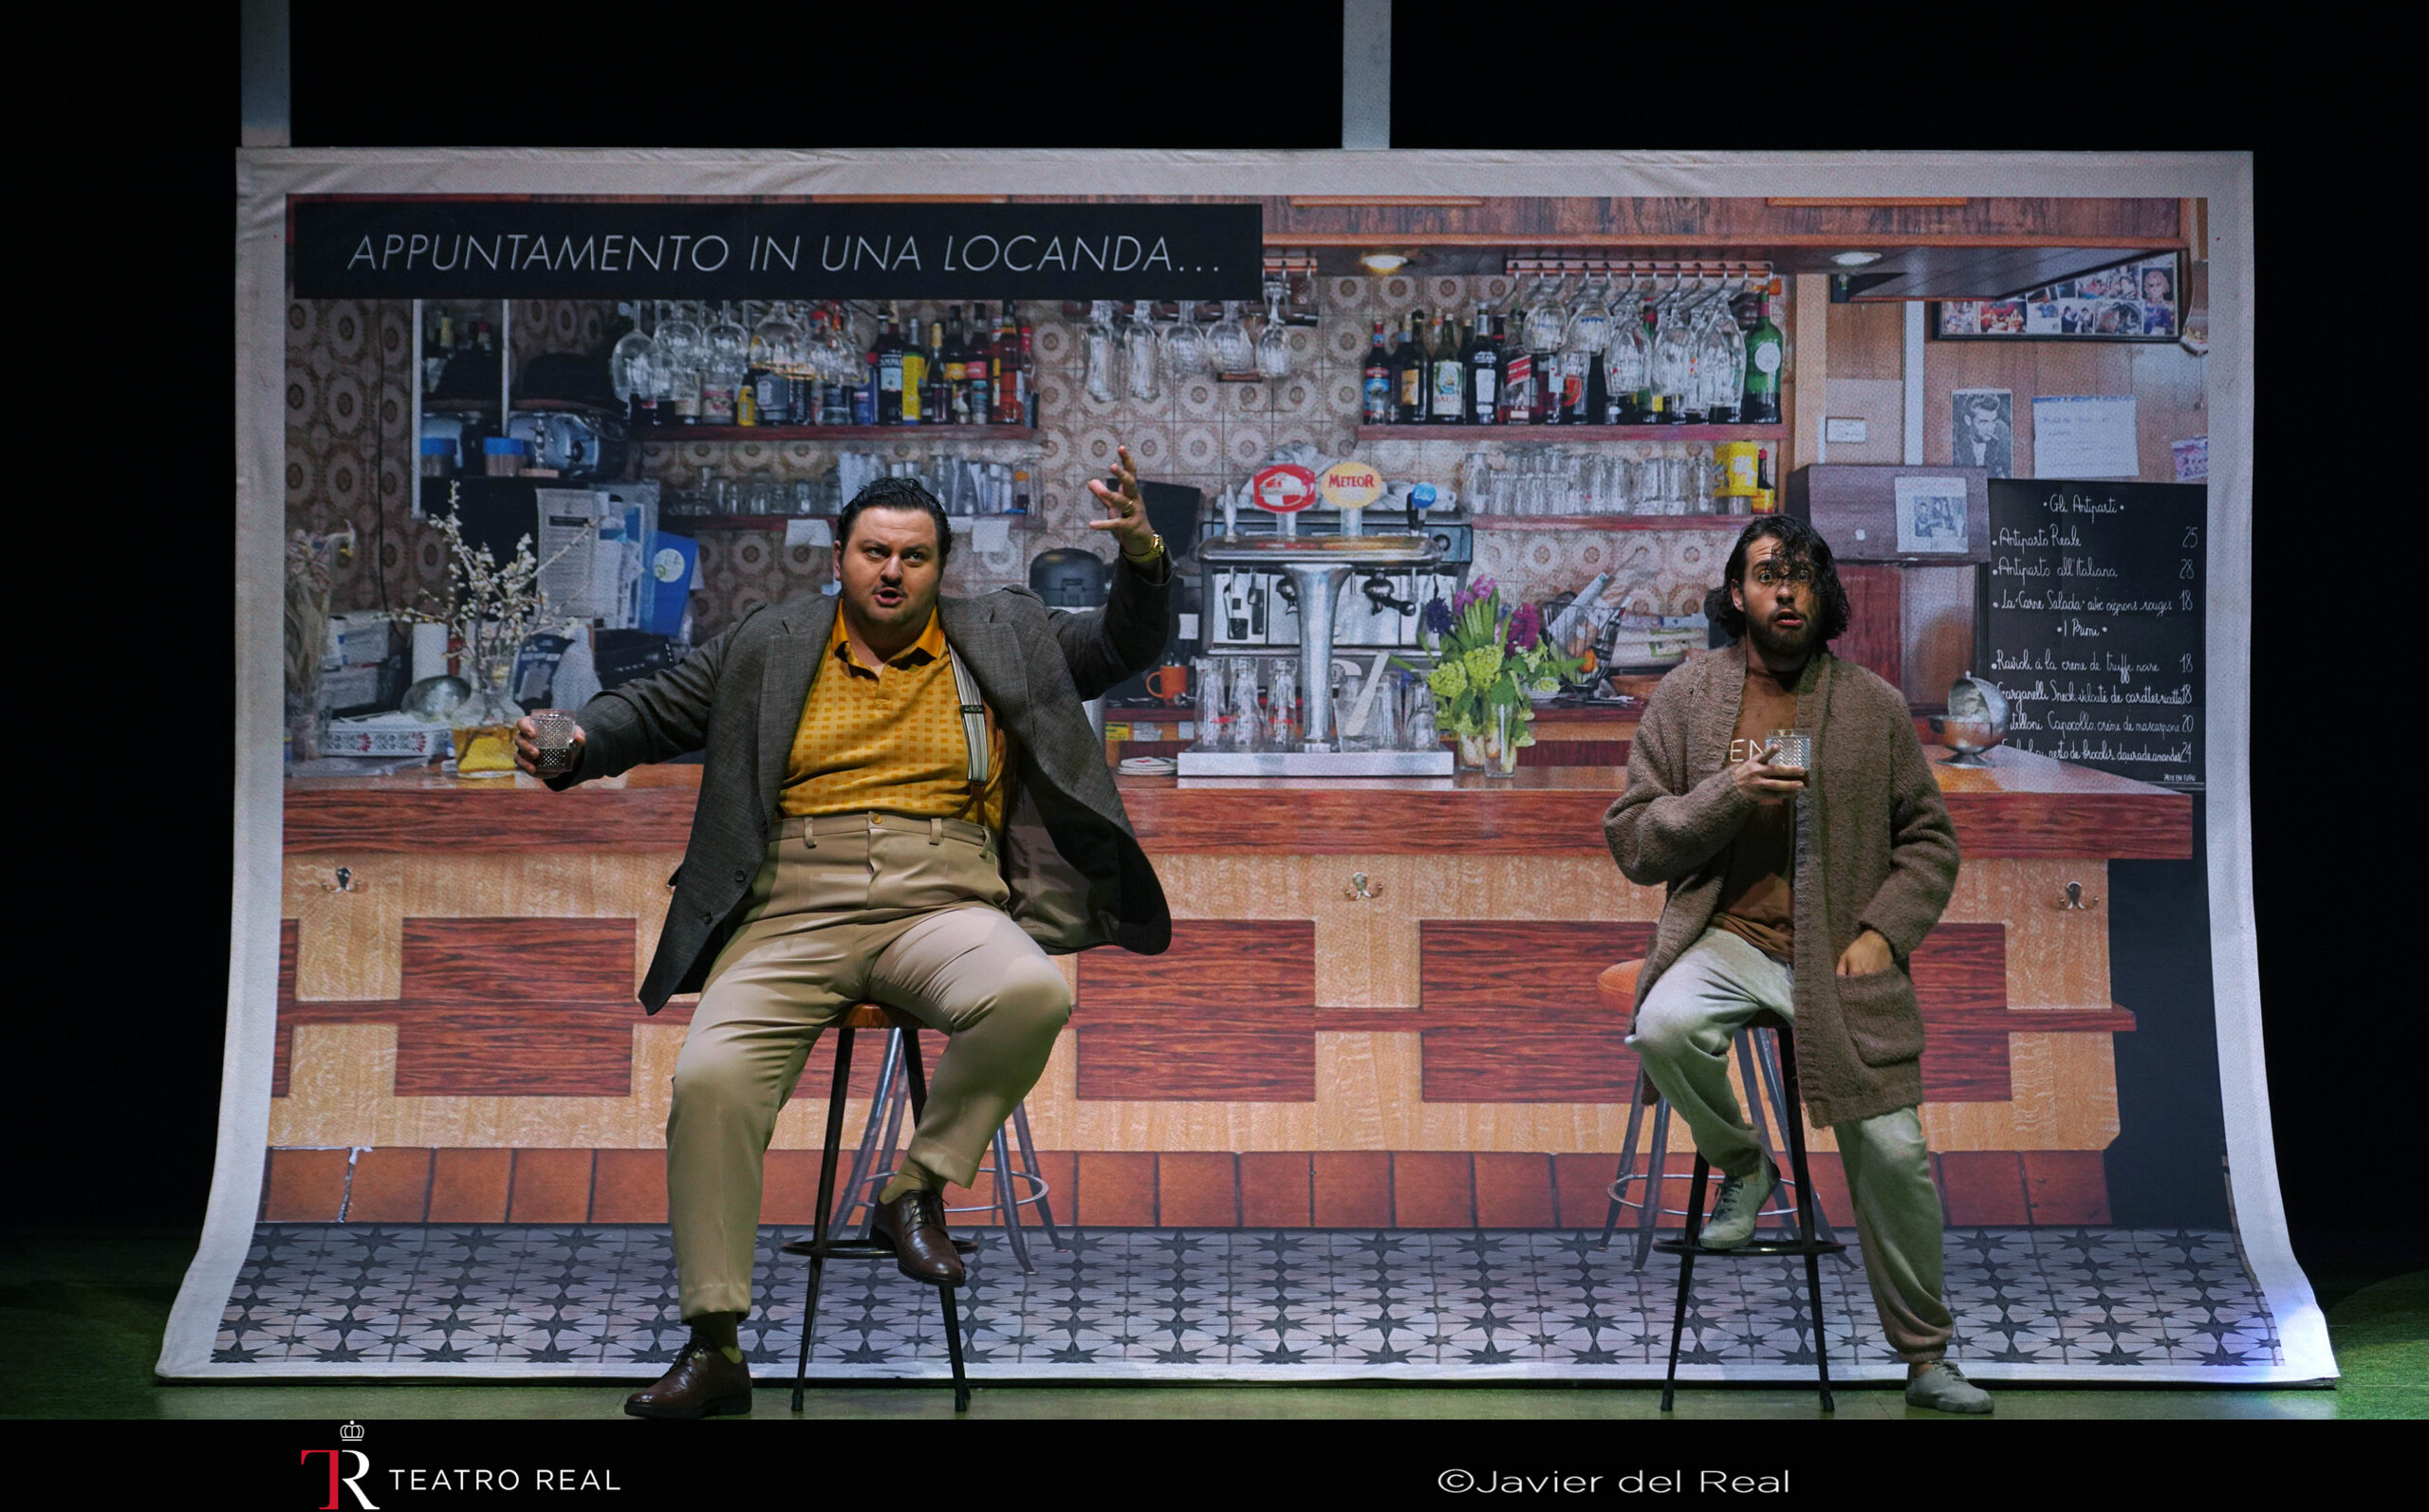 'Il turco in Italia': el bel canto regresa a lo grande (como fotonovela) al Teatro Real